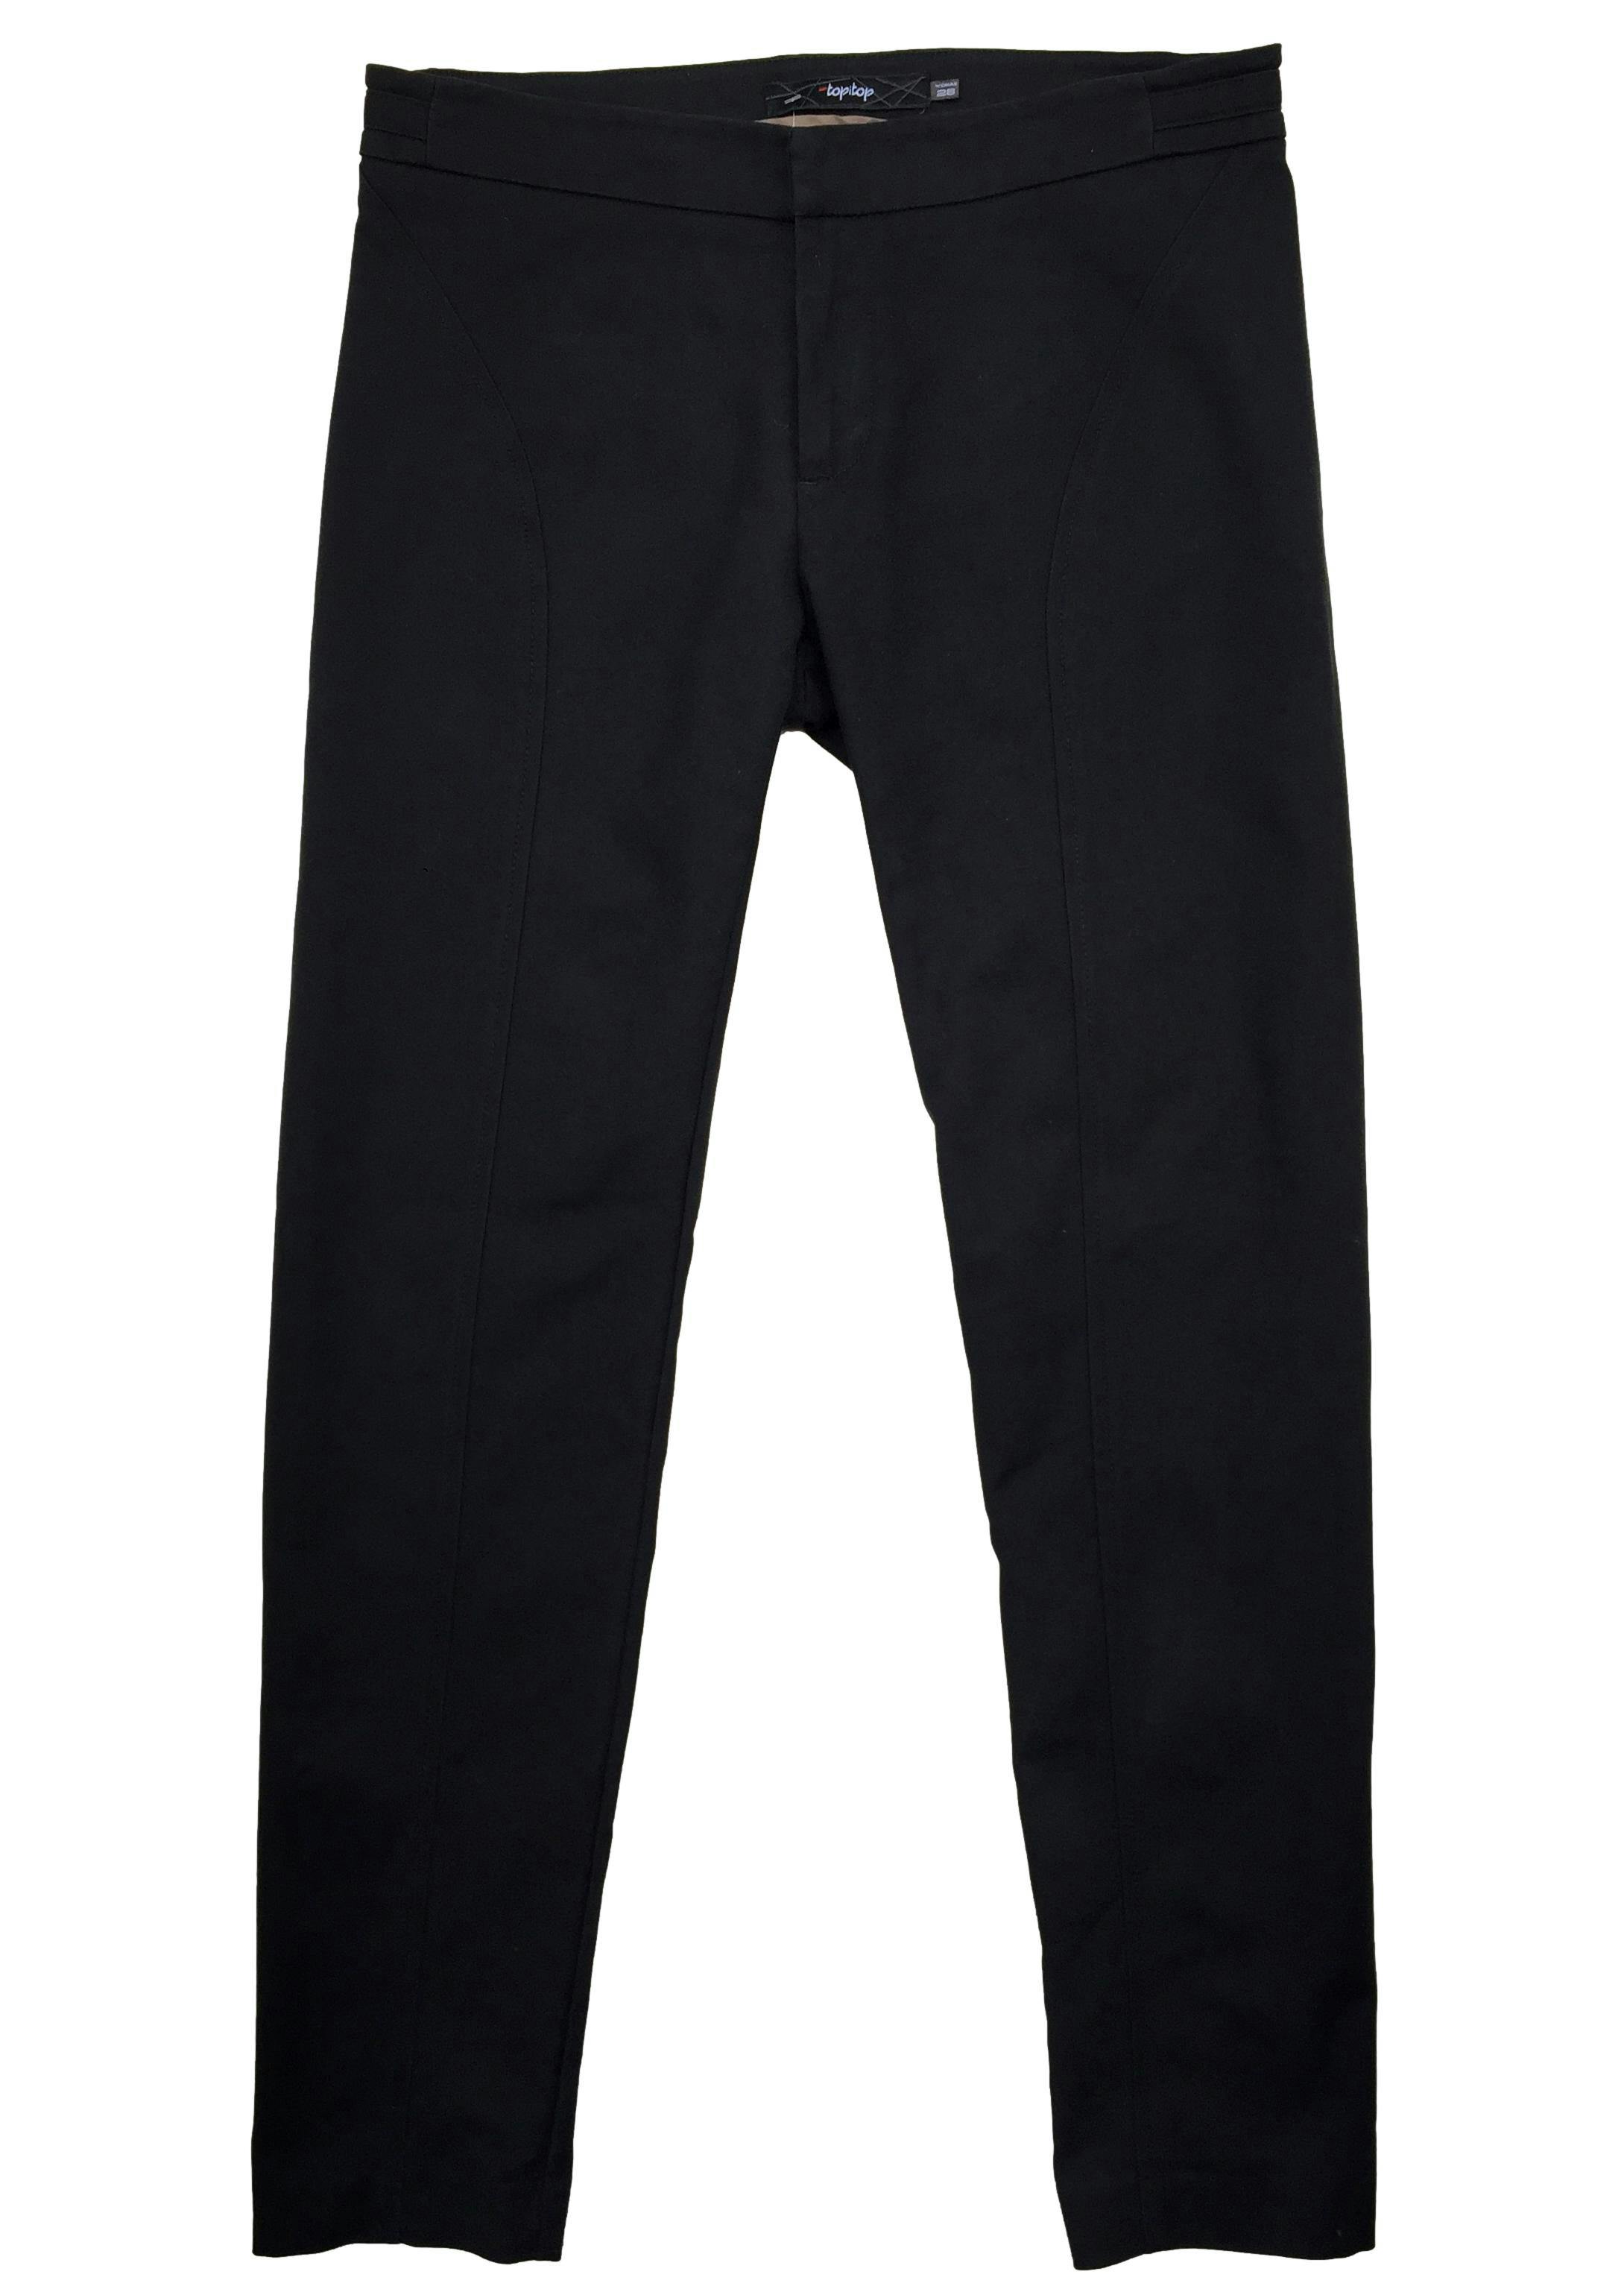 Pantalón  topi top slim negro con cierre y falsos bolsillos. Cintura 78 cm, Tiro 21 cm, largo 92 cm. 